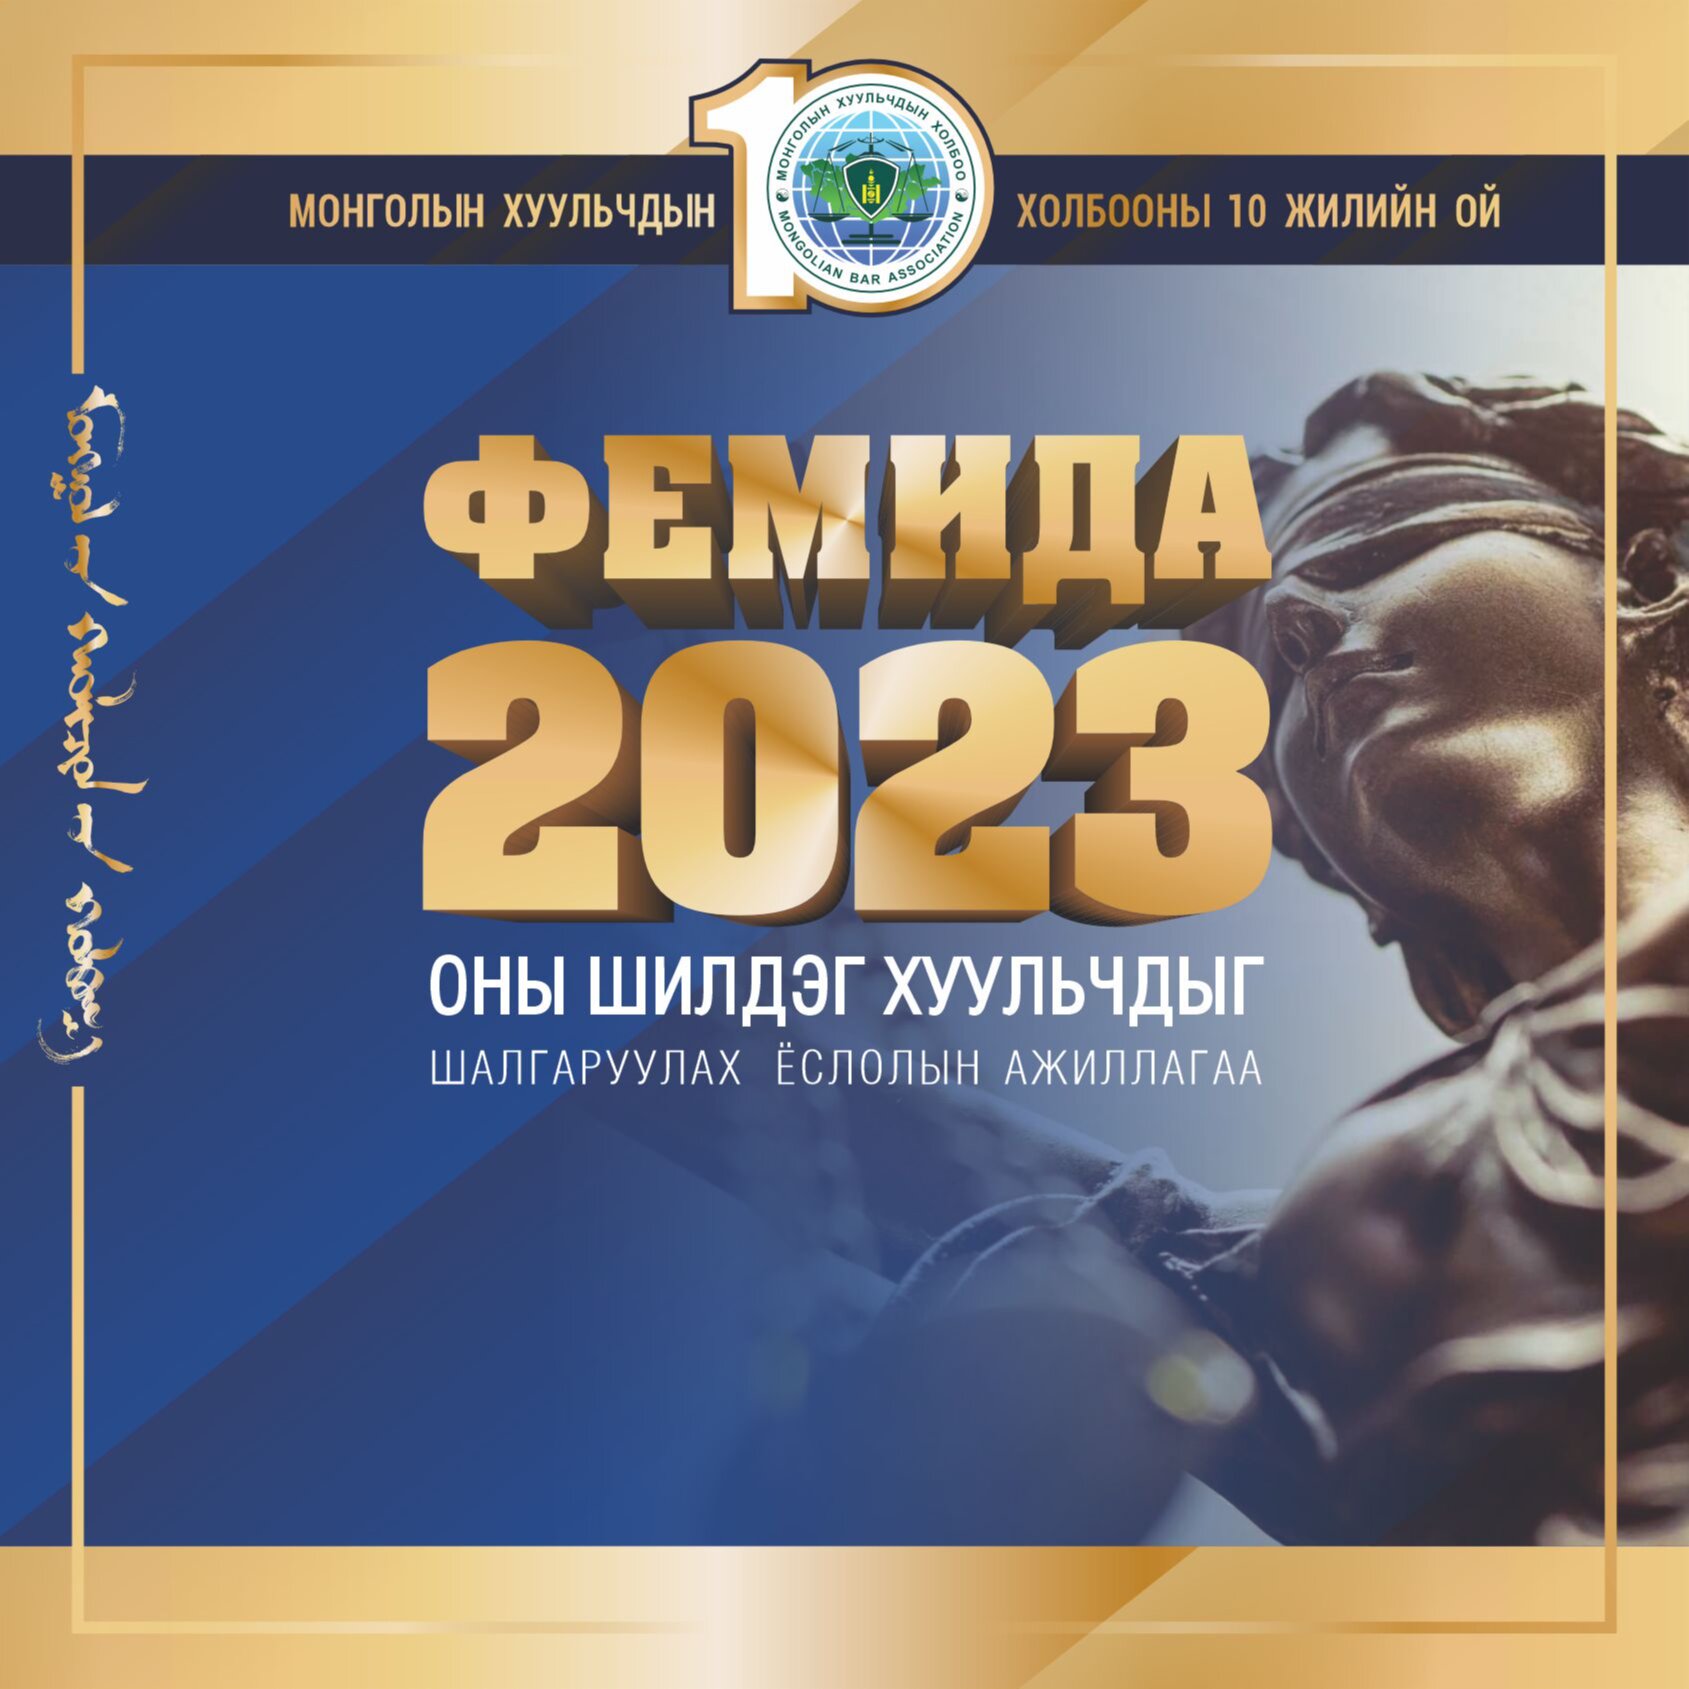 Монголын Хуульчдын холбооны 2023 оны шилдэг хуульч шалгаруулах  “Фемида 2023” ёслол